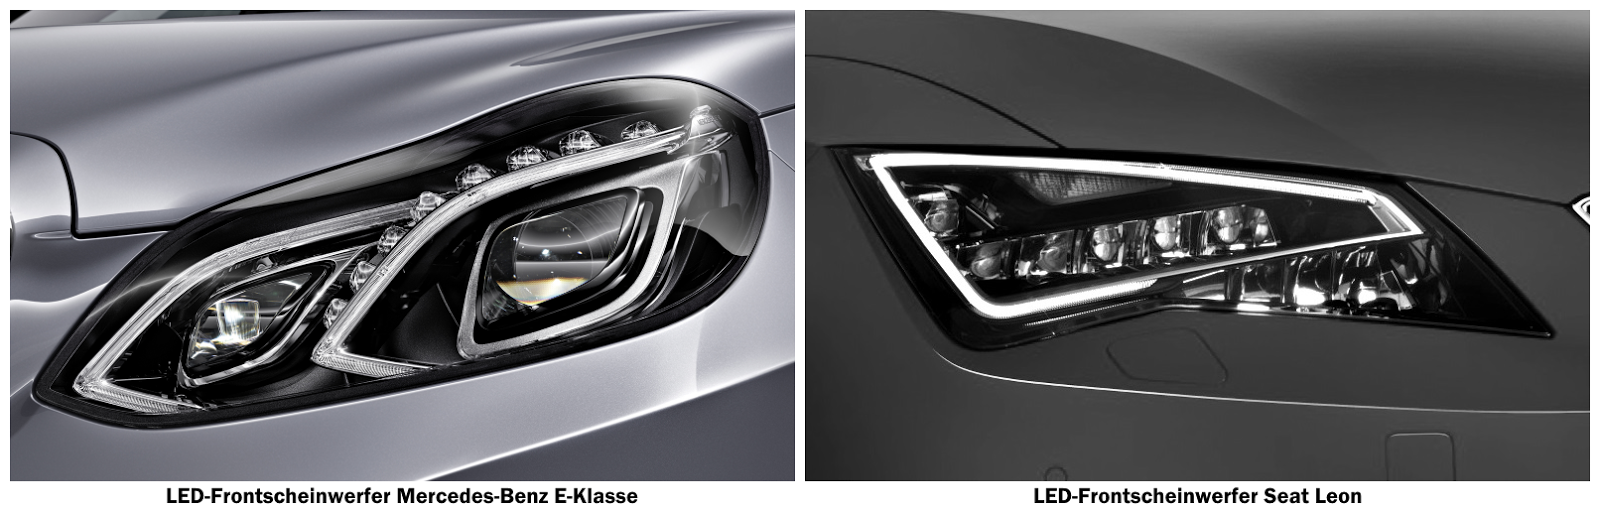 LED-Scheinwerfer Mercedes-Benz E-Klasse & Seat Leon | Photo © Hersteller